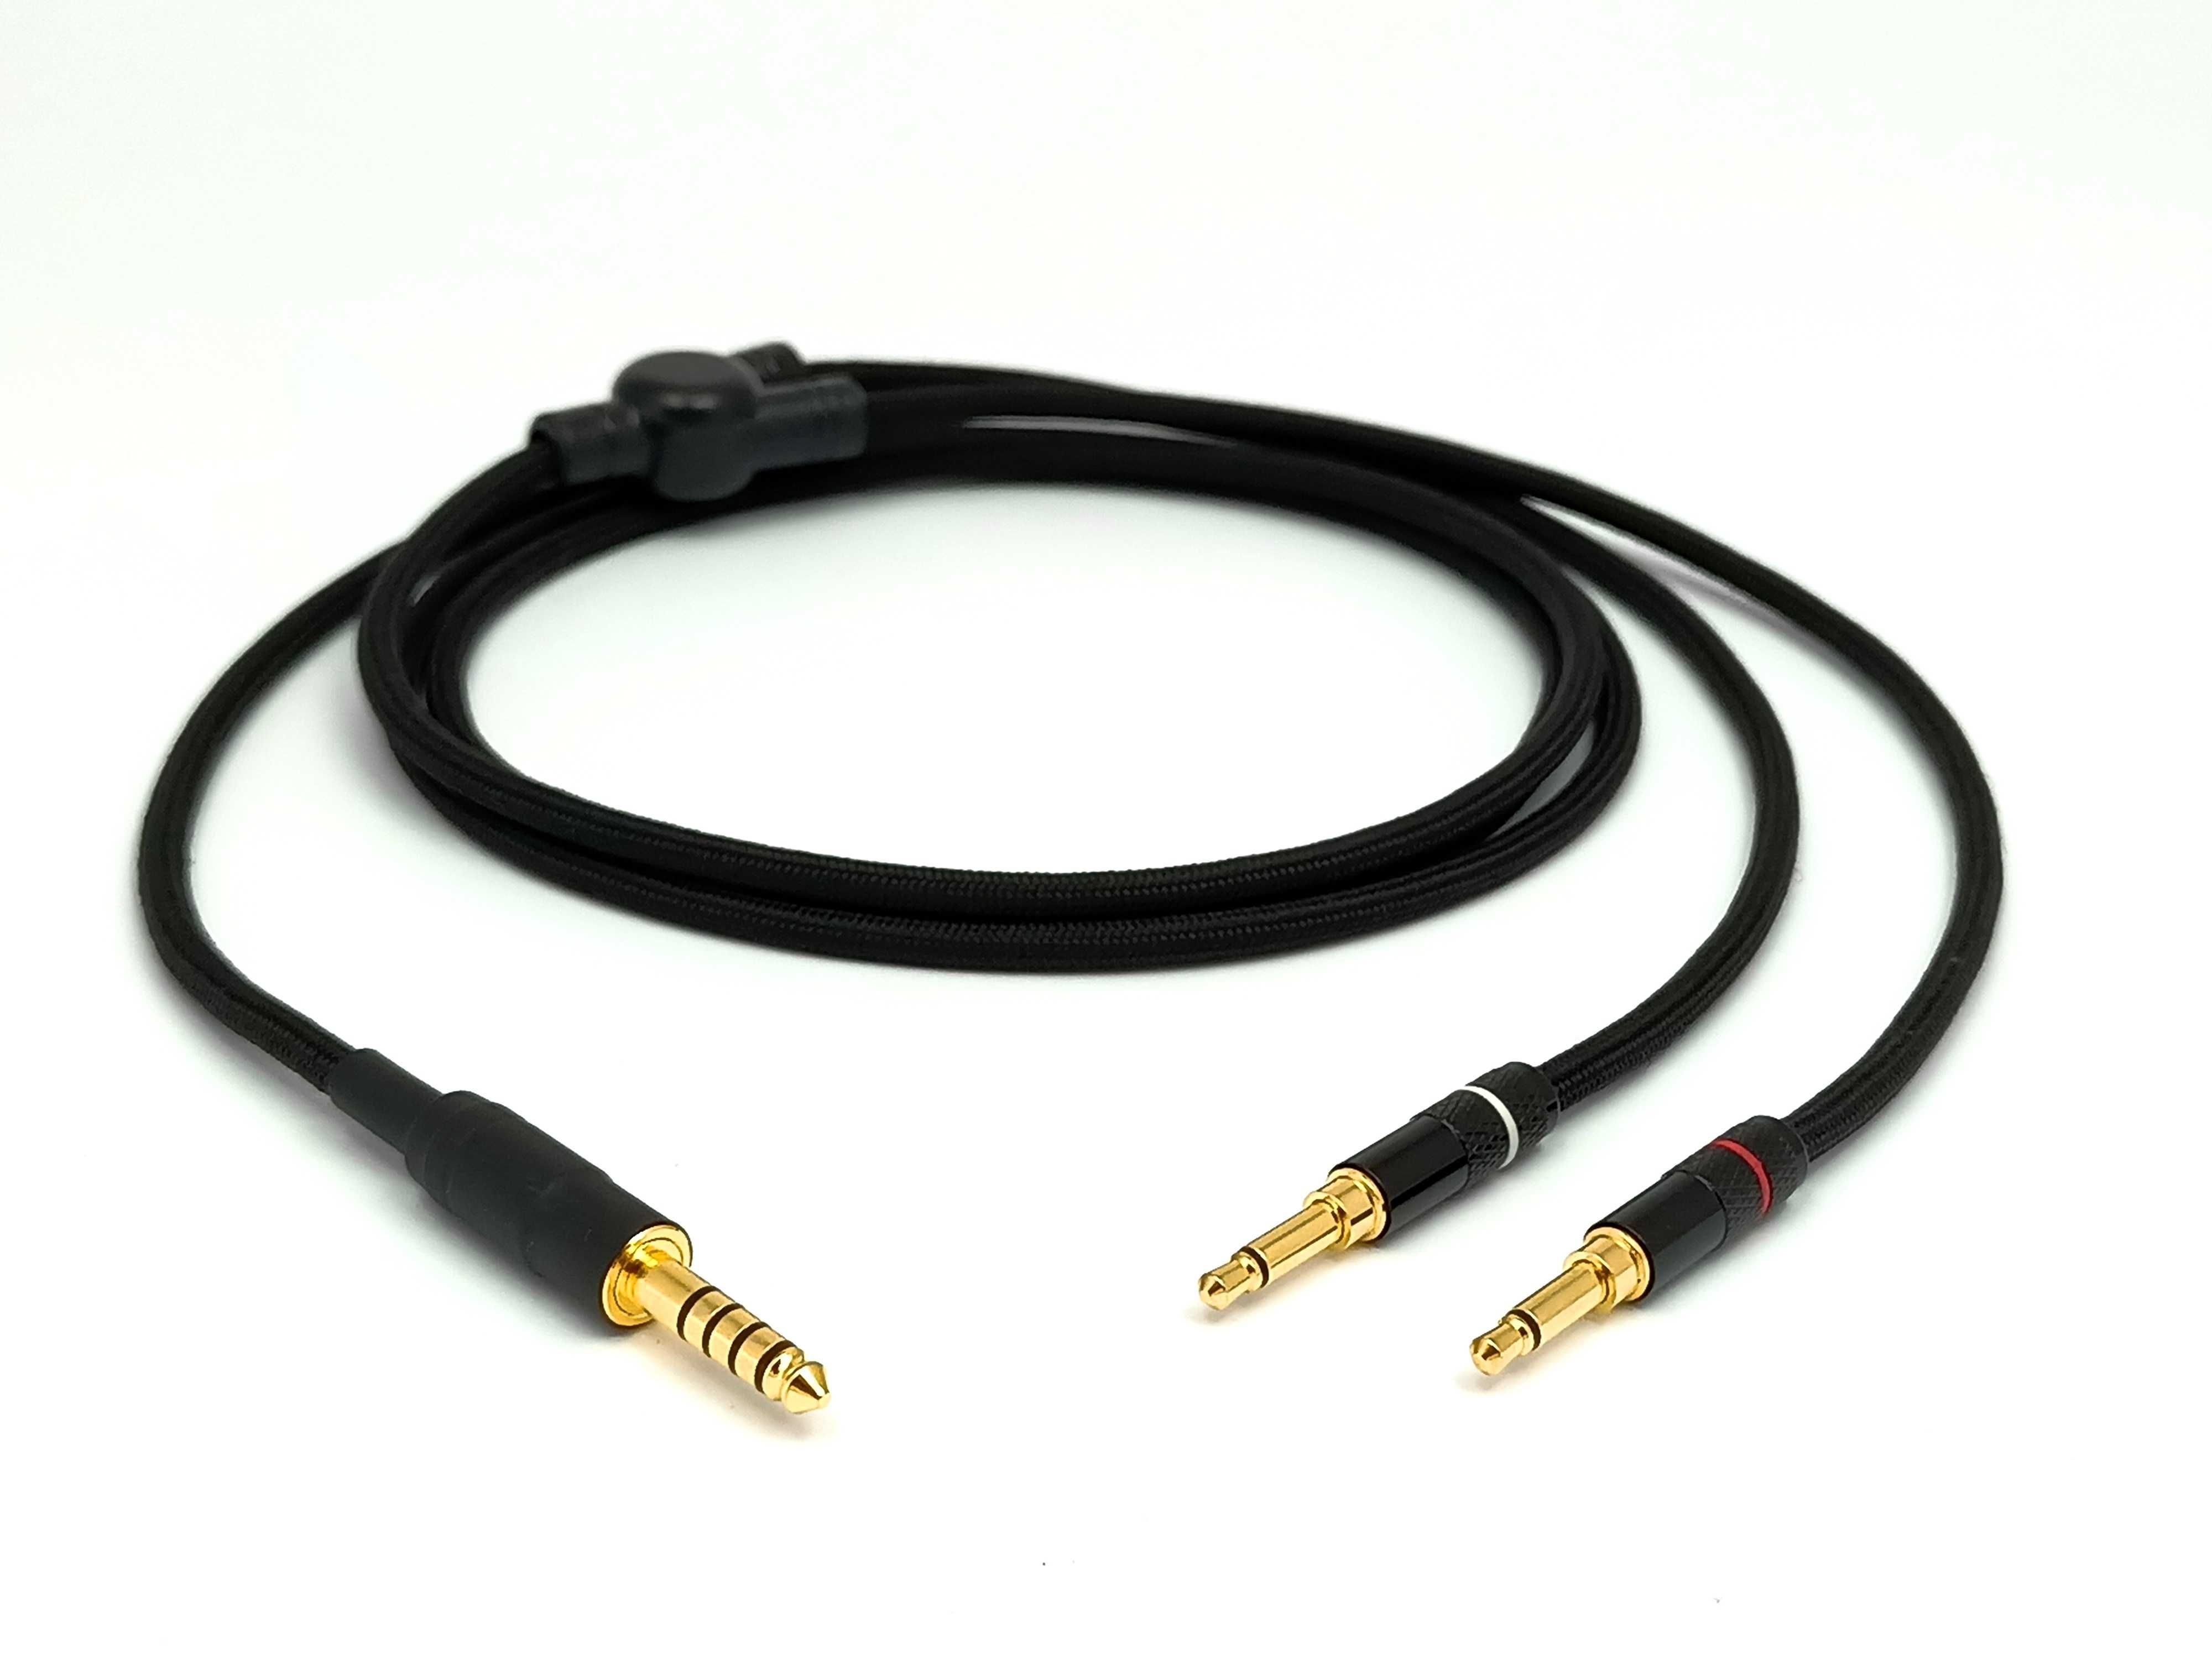 FOCAL CLEAR ELEAR ELEGIA zbalansowany ręcznie wykonany kabel 4,4mm